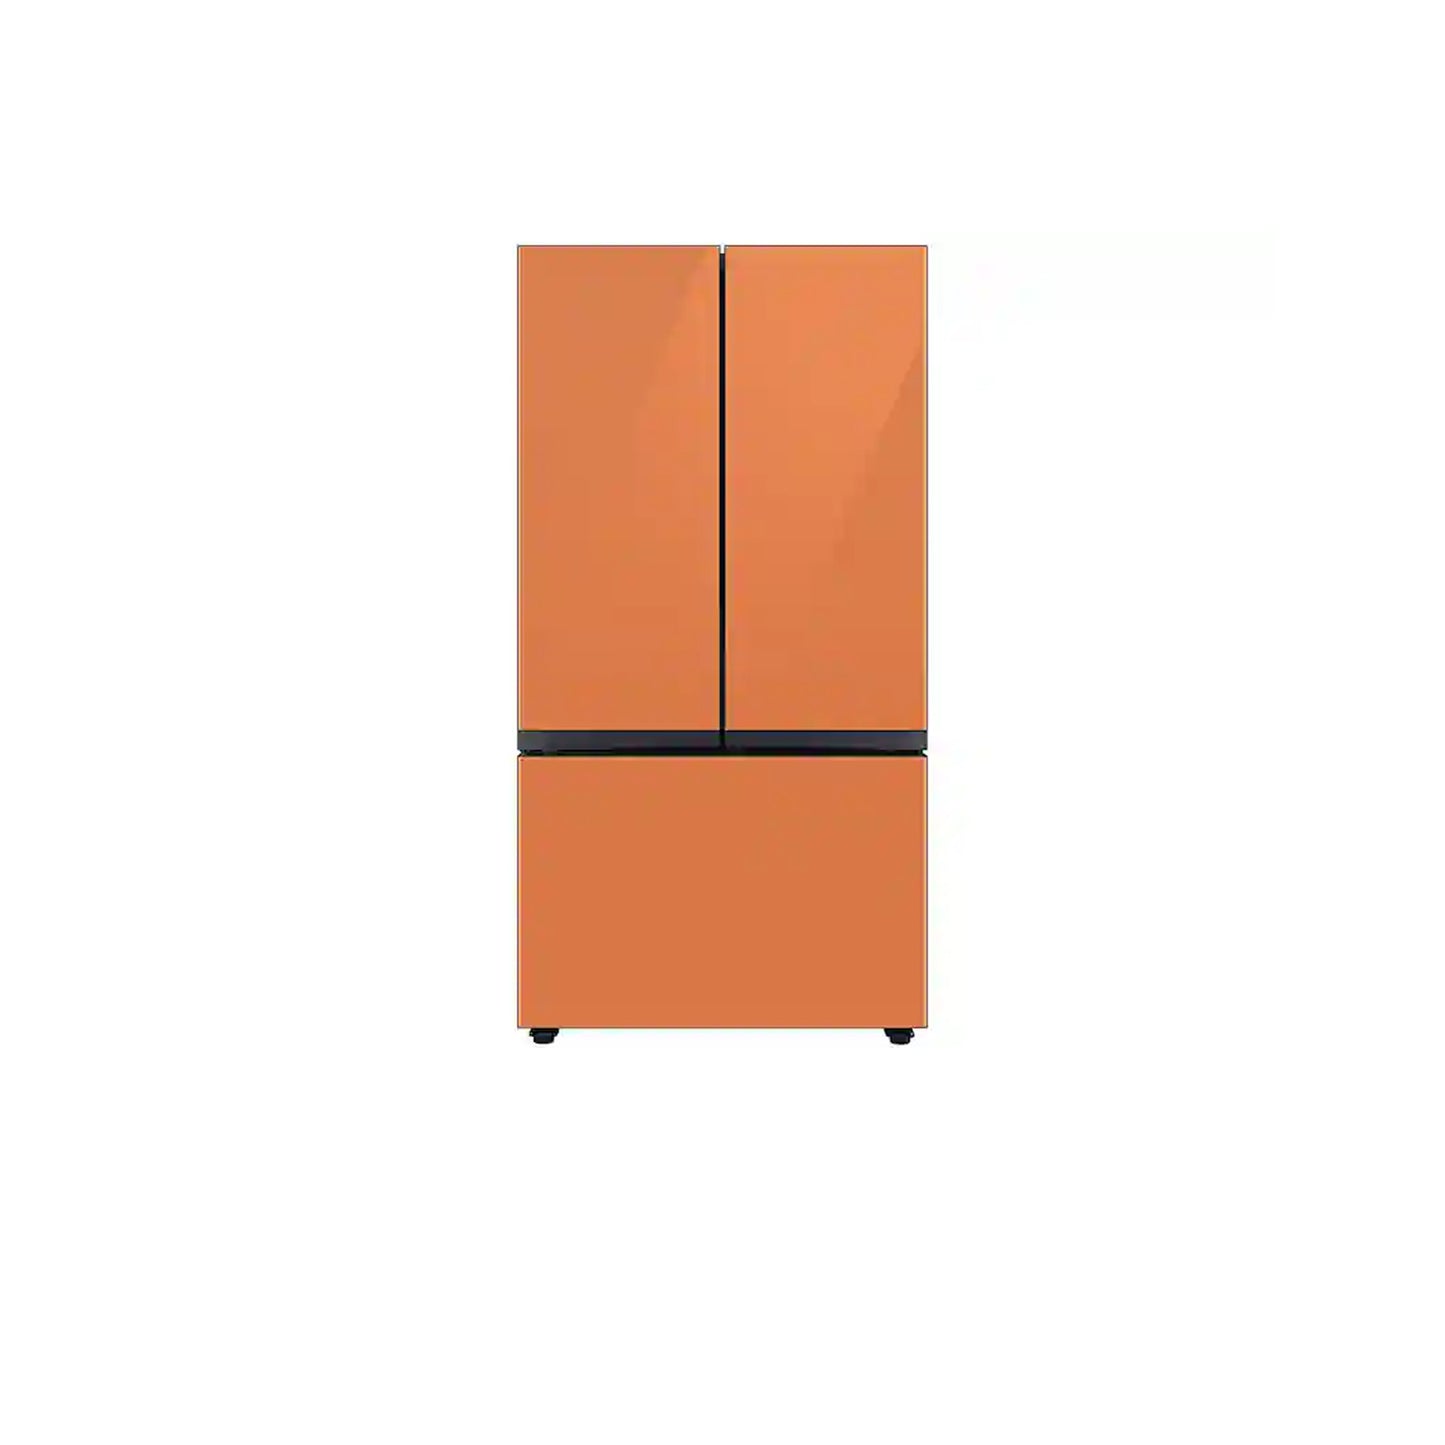 Bespoke 3-Door French Door Refrigerator (24 cu. ft.) with Beverage Center™ in Stainless Steel.